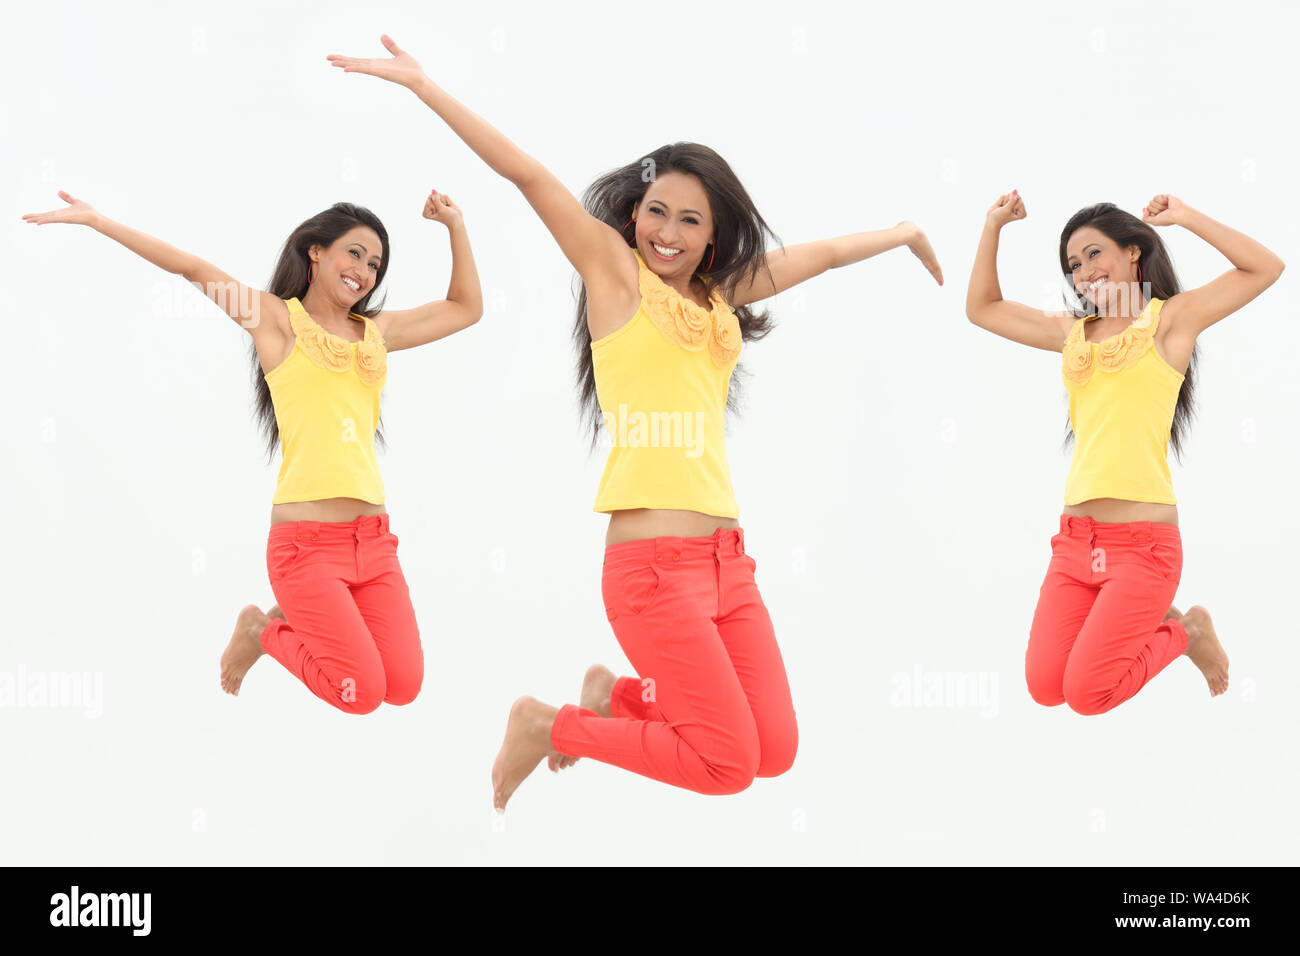 Immagini multiple di una giovane donna che salta in aria Foto Stock